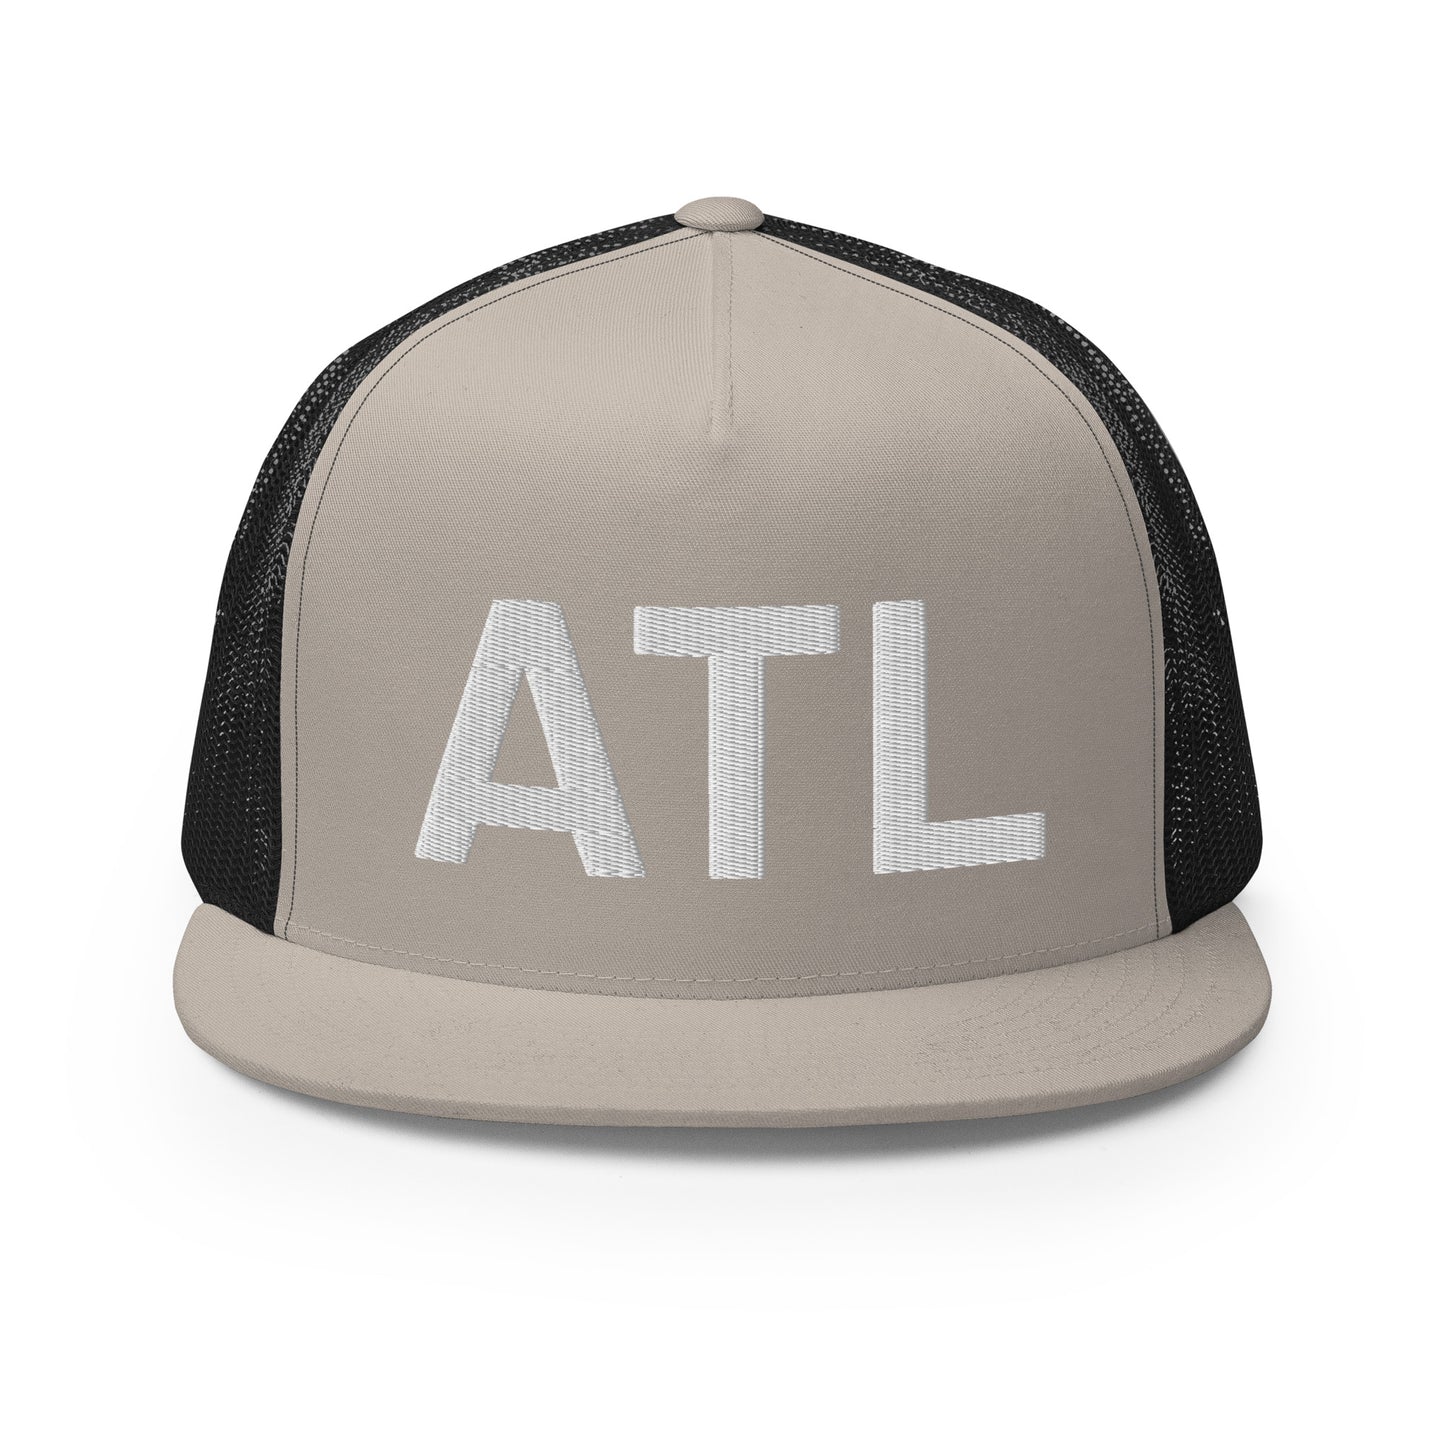 ATL Trucker Hat